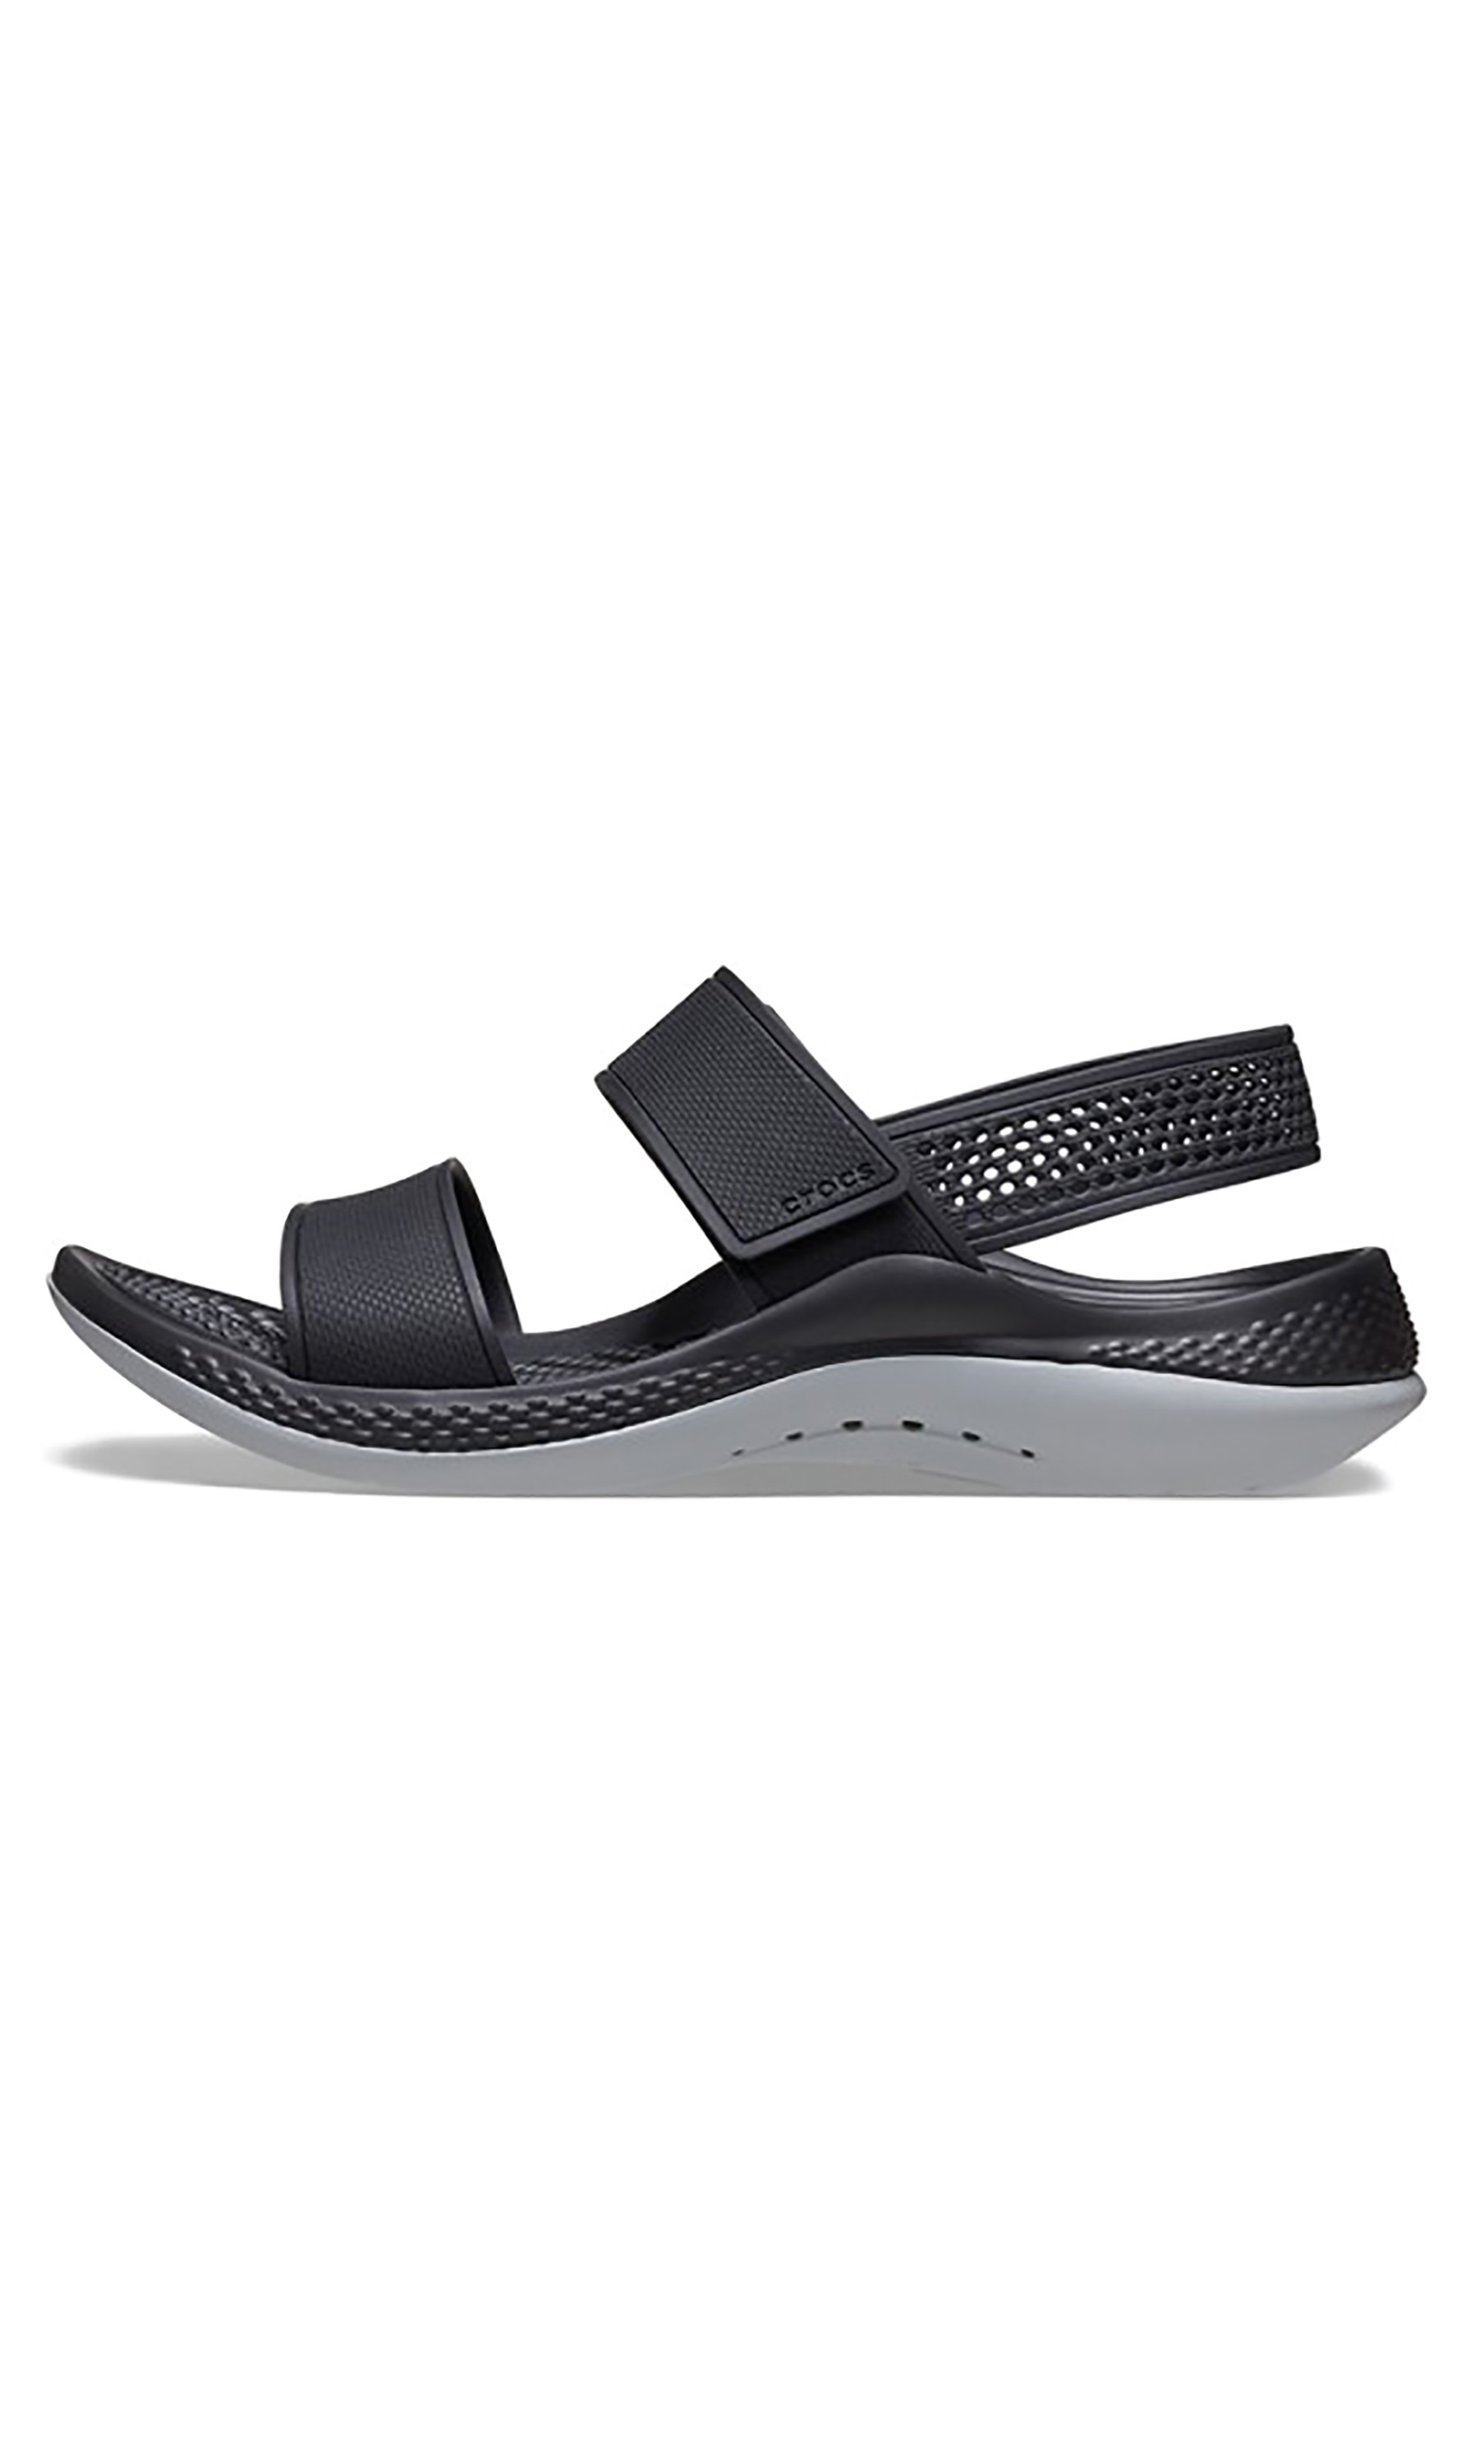 Crocs Literide 360 Sandal W Black Grey Women Strap Sandals Shoes size 10 |  Strap sandals, Crocs literide, Grey women